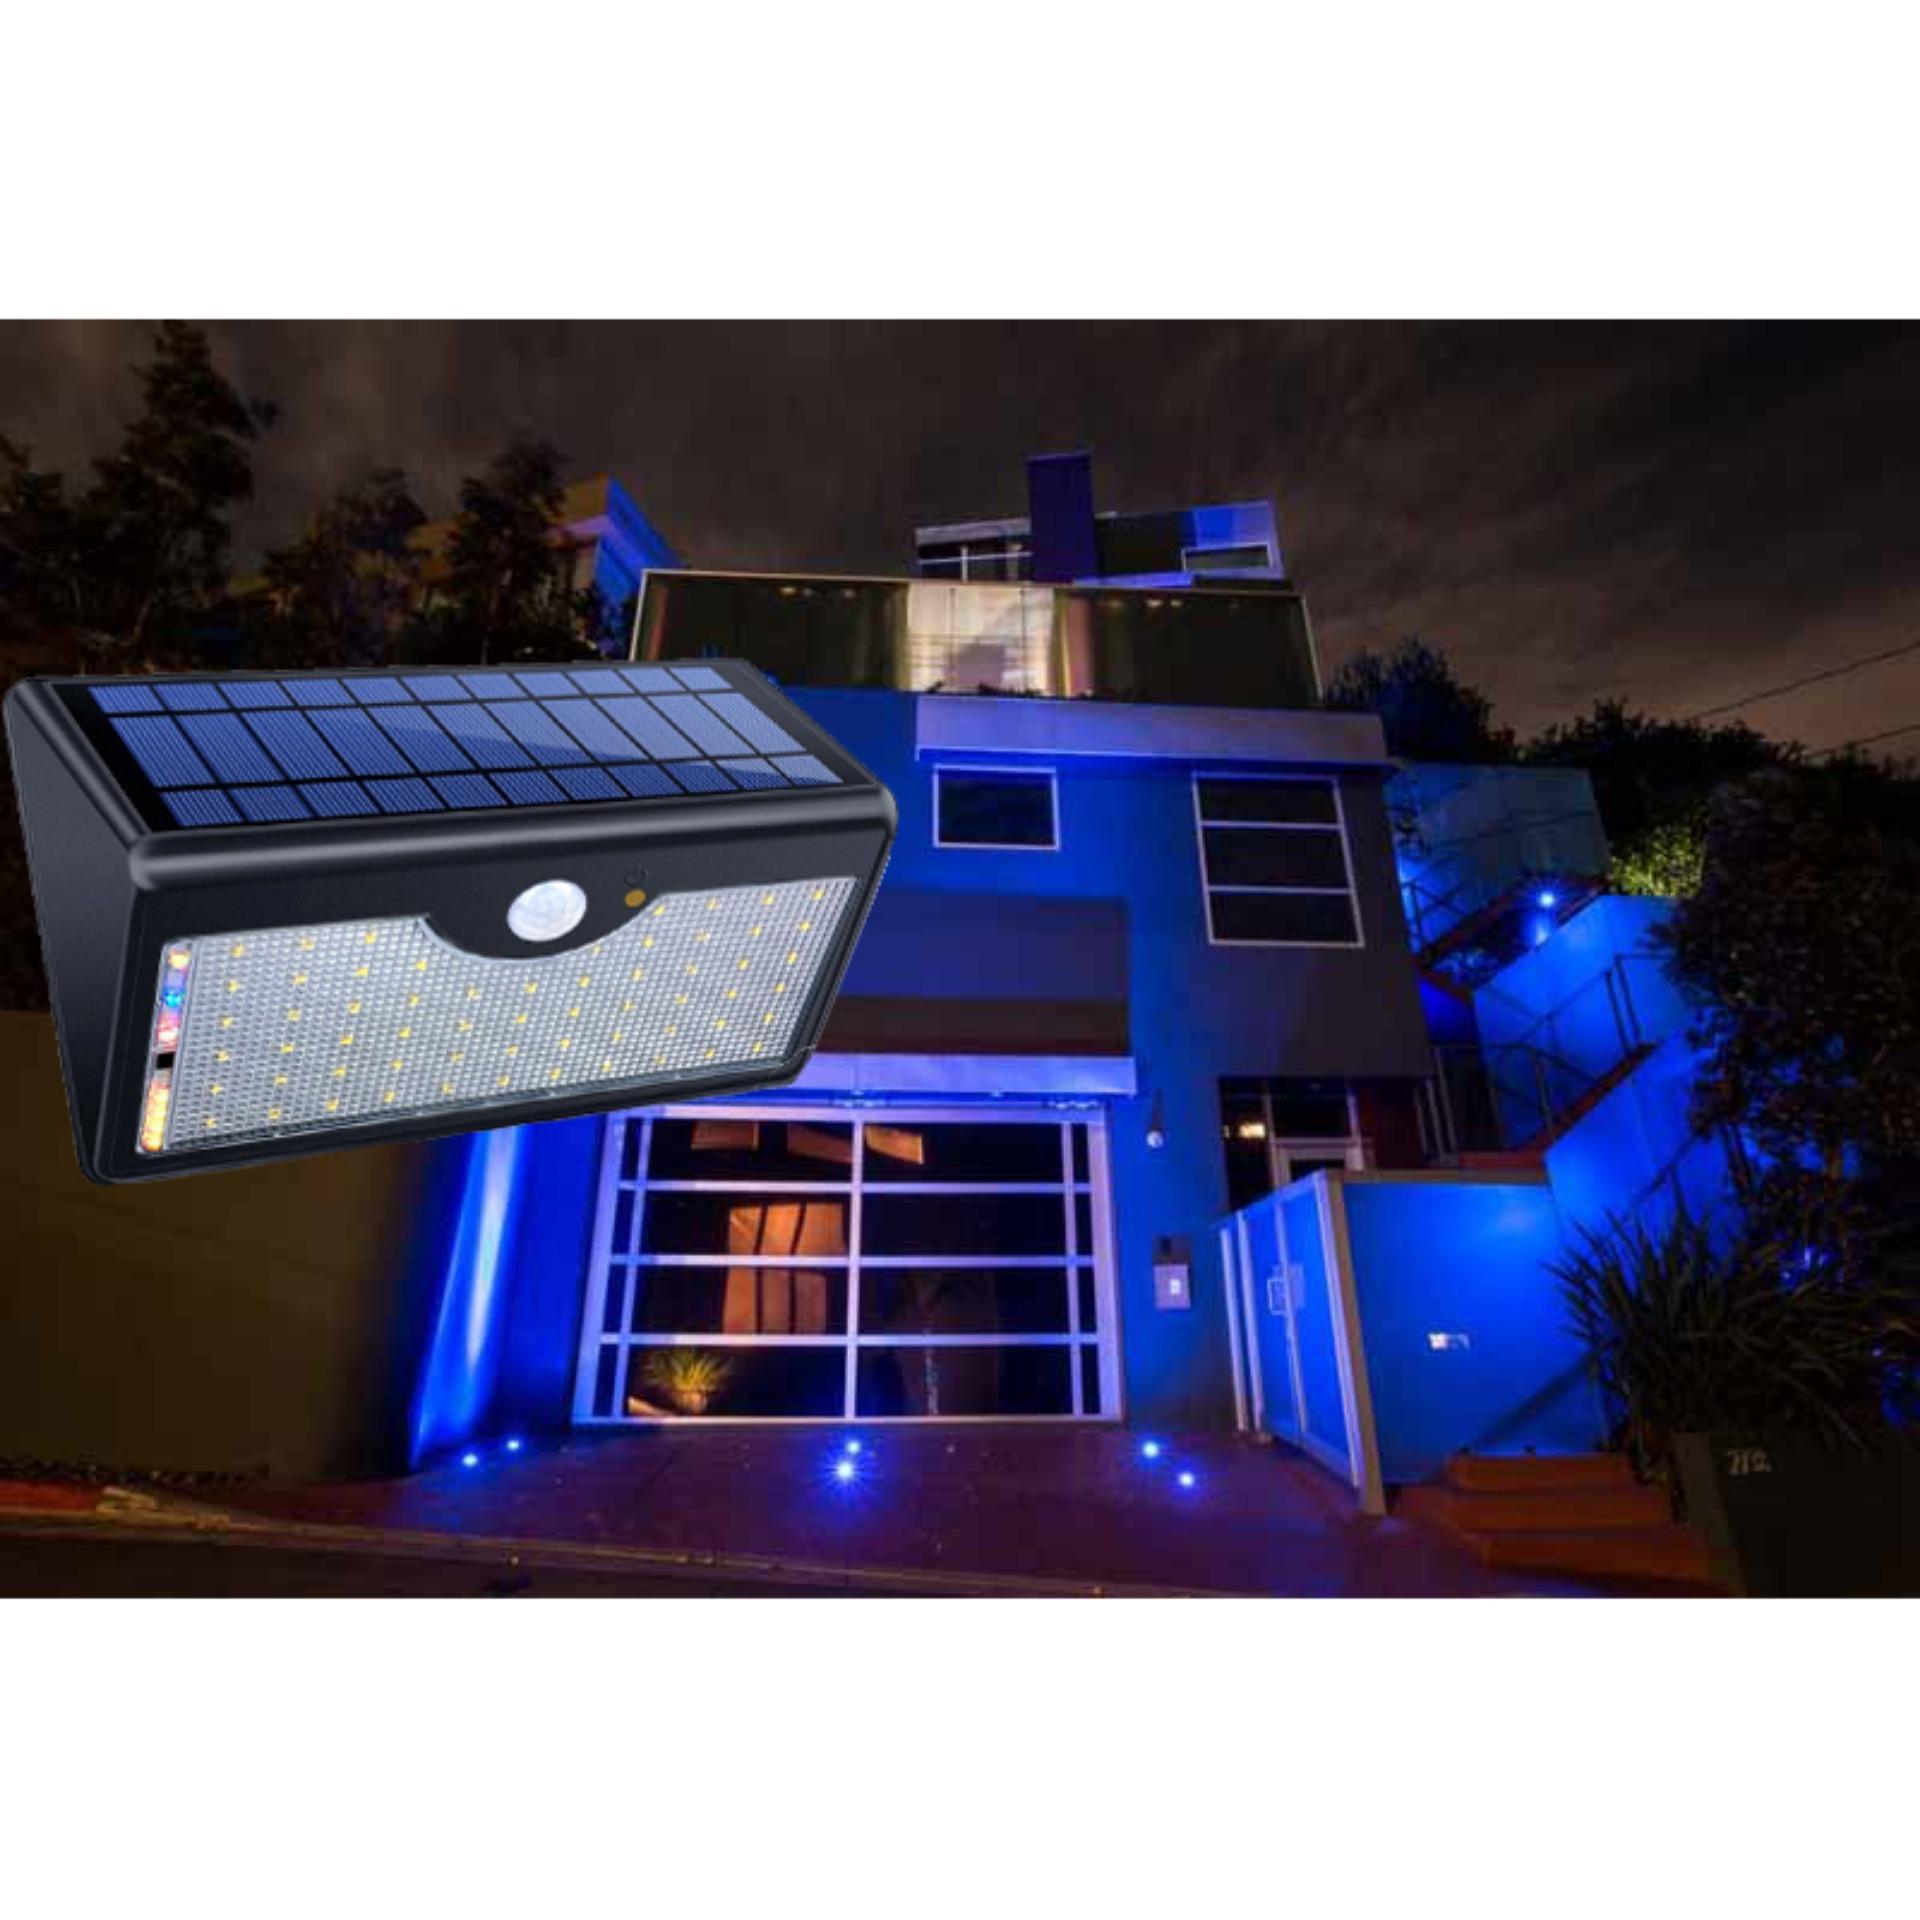 Đèn Ngoài Trời, Cảm biến thông minh OM-54, Đèn led siêu sáng sử dụng năng lượng mặt trời - Combo nguyên bộ Đèn Led + Cảm biến tắt bật Ngày  Đêm Máy lấy năng lượng điện mặt trời